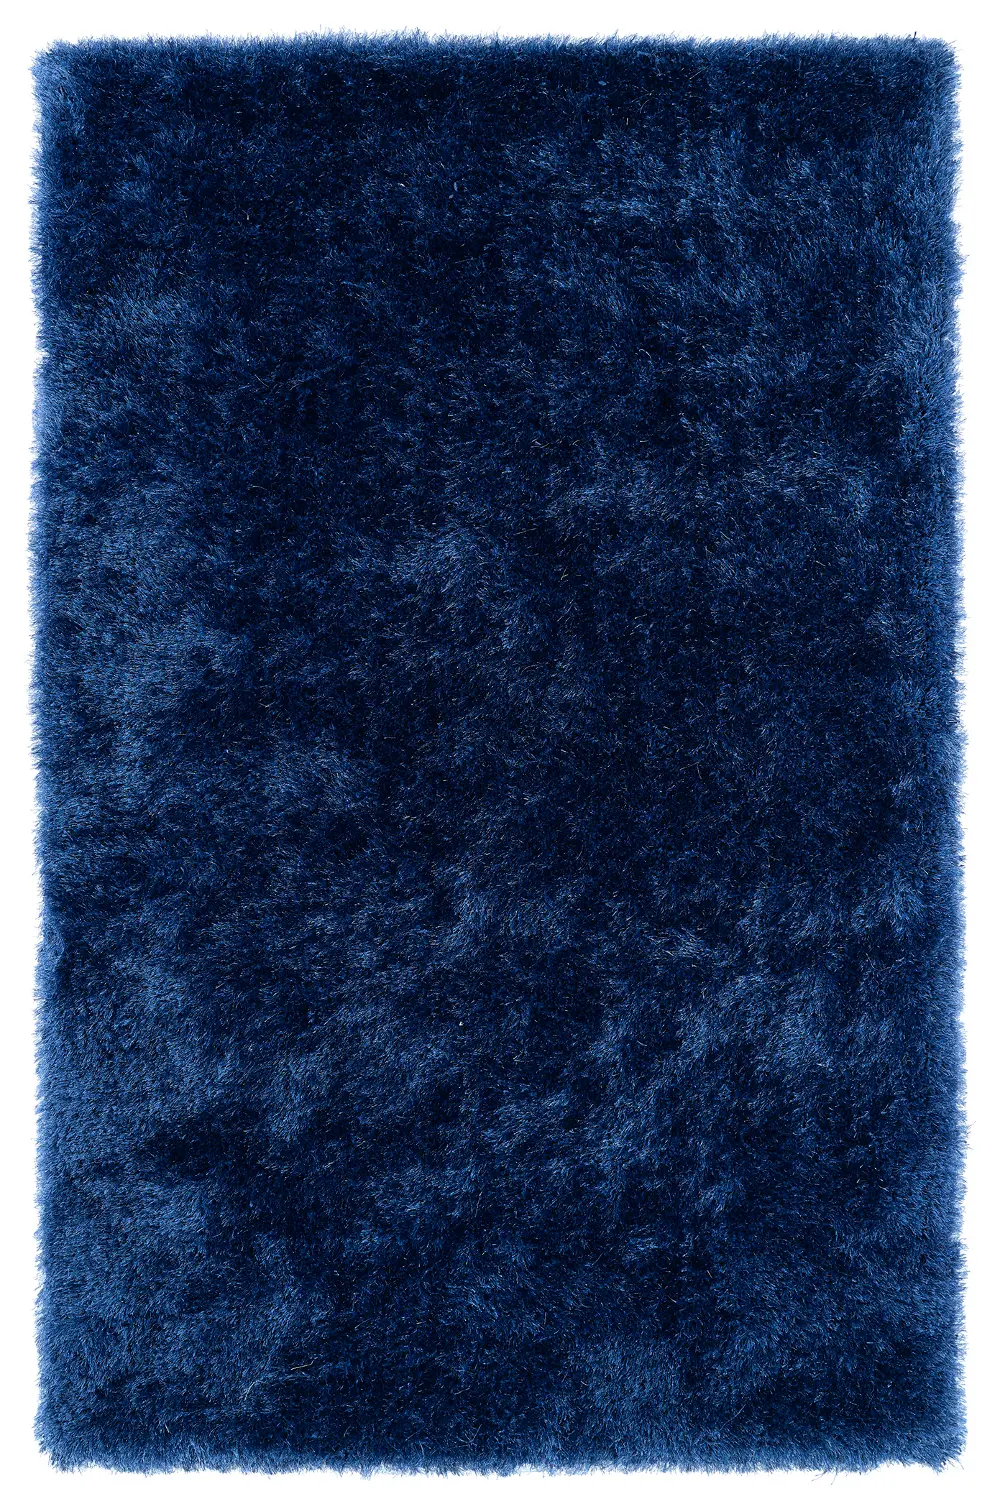 5 x 7 Medium Denim Blue Shag Rug - Posh-1